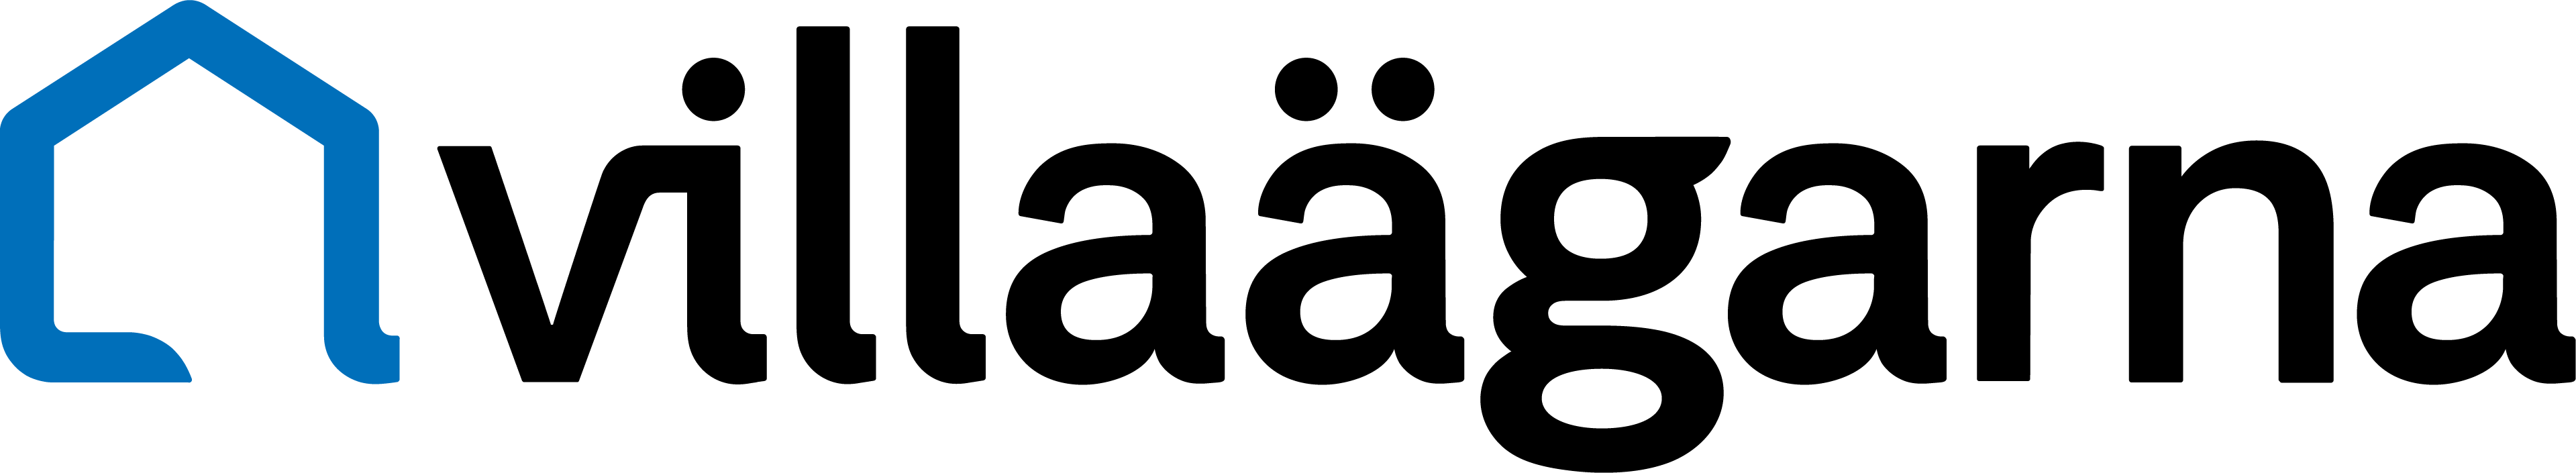 villaagarna logo